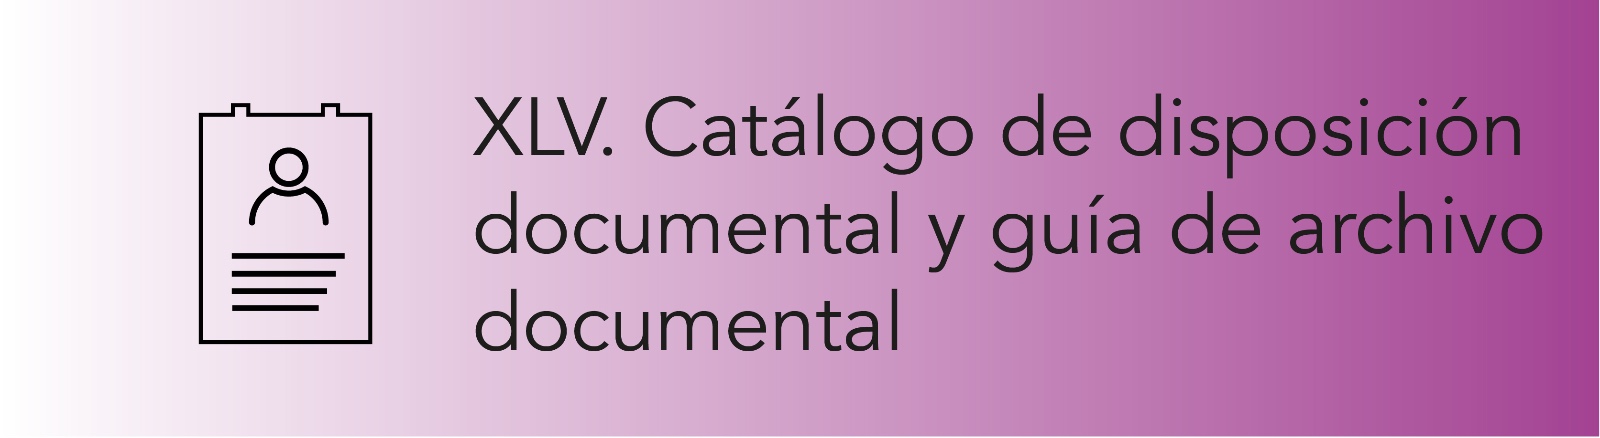 Imagen que permite conocer el Catálogo de disposición documental y guía de archivo documental